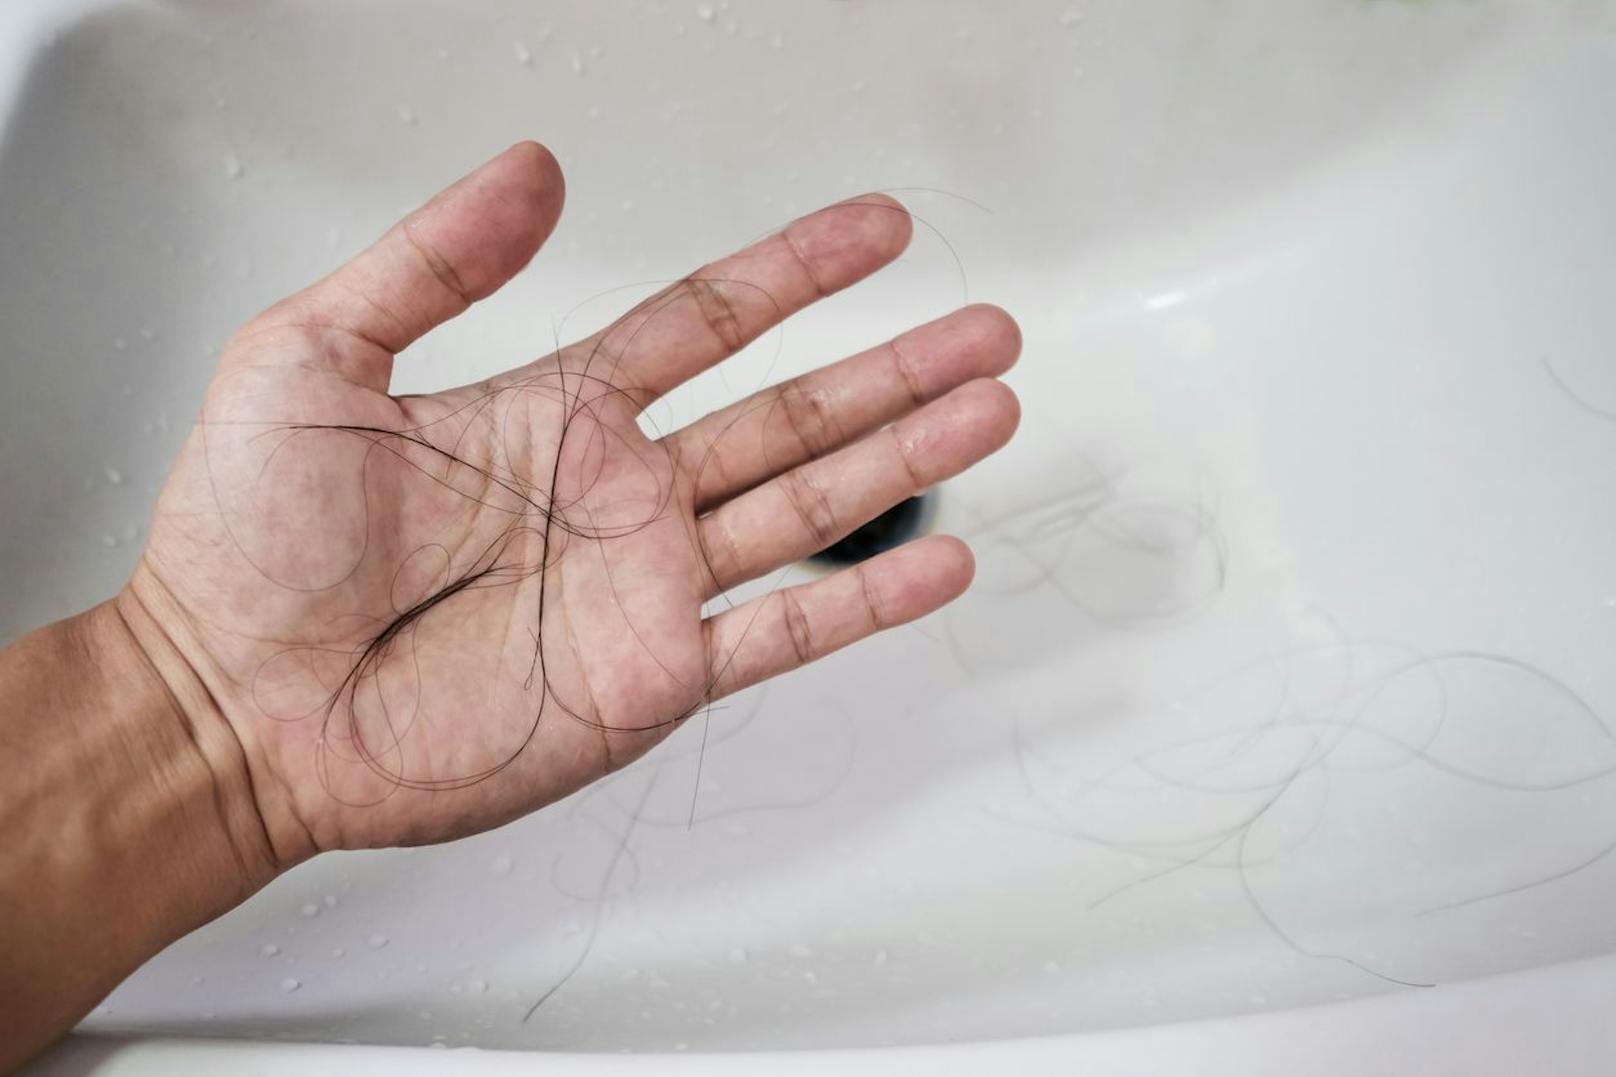 79 Prozent der männlichen Teilnehmer würden sich wünschen, dass ihre Partner das Waschbecken und den Abfluss nicht mit Haaren verstopfen würden, beziehungsweise, dass dieser von ihnen gesäubert werden sollte.